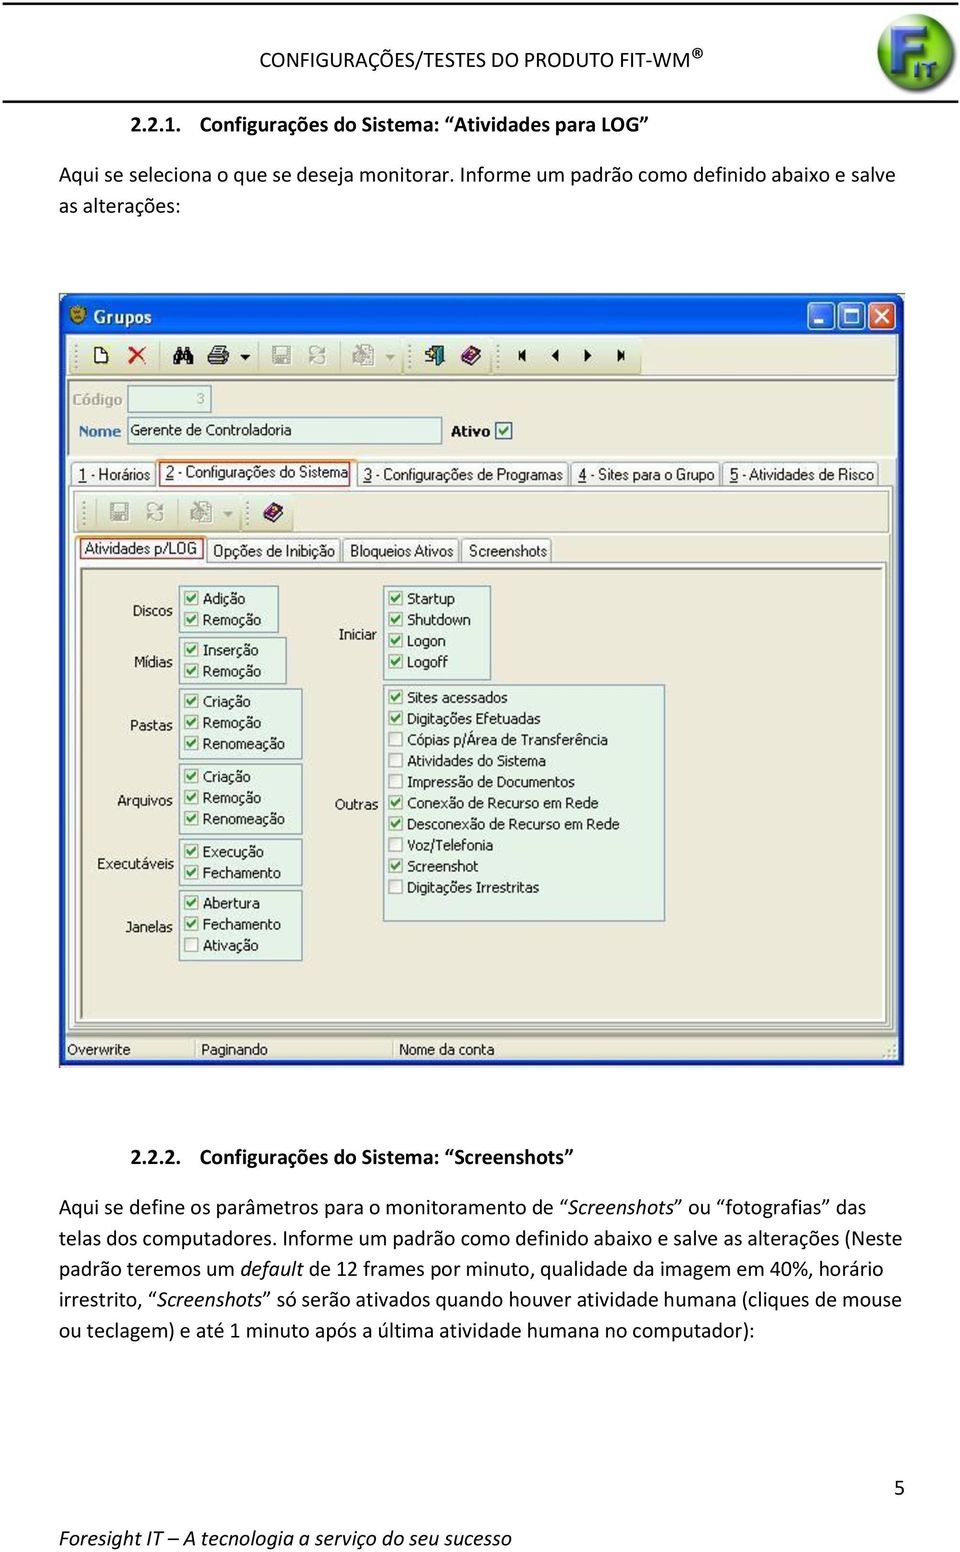 2.2. Configurações do Sistema: Screenshots Aqui se define os parâmetros para o monitoramento de Screenshots ou fotografias das telas dos computadores.